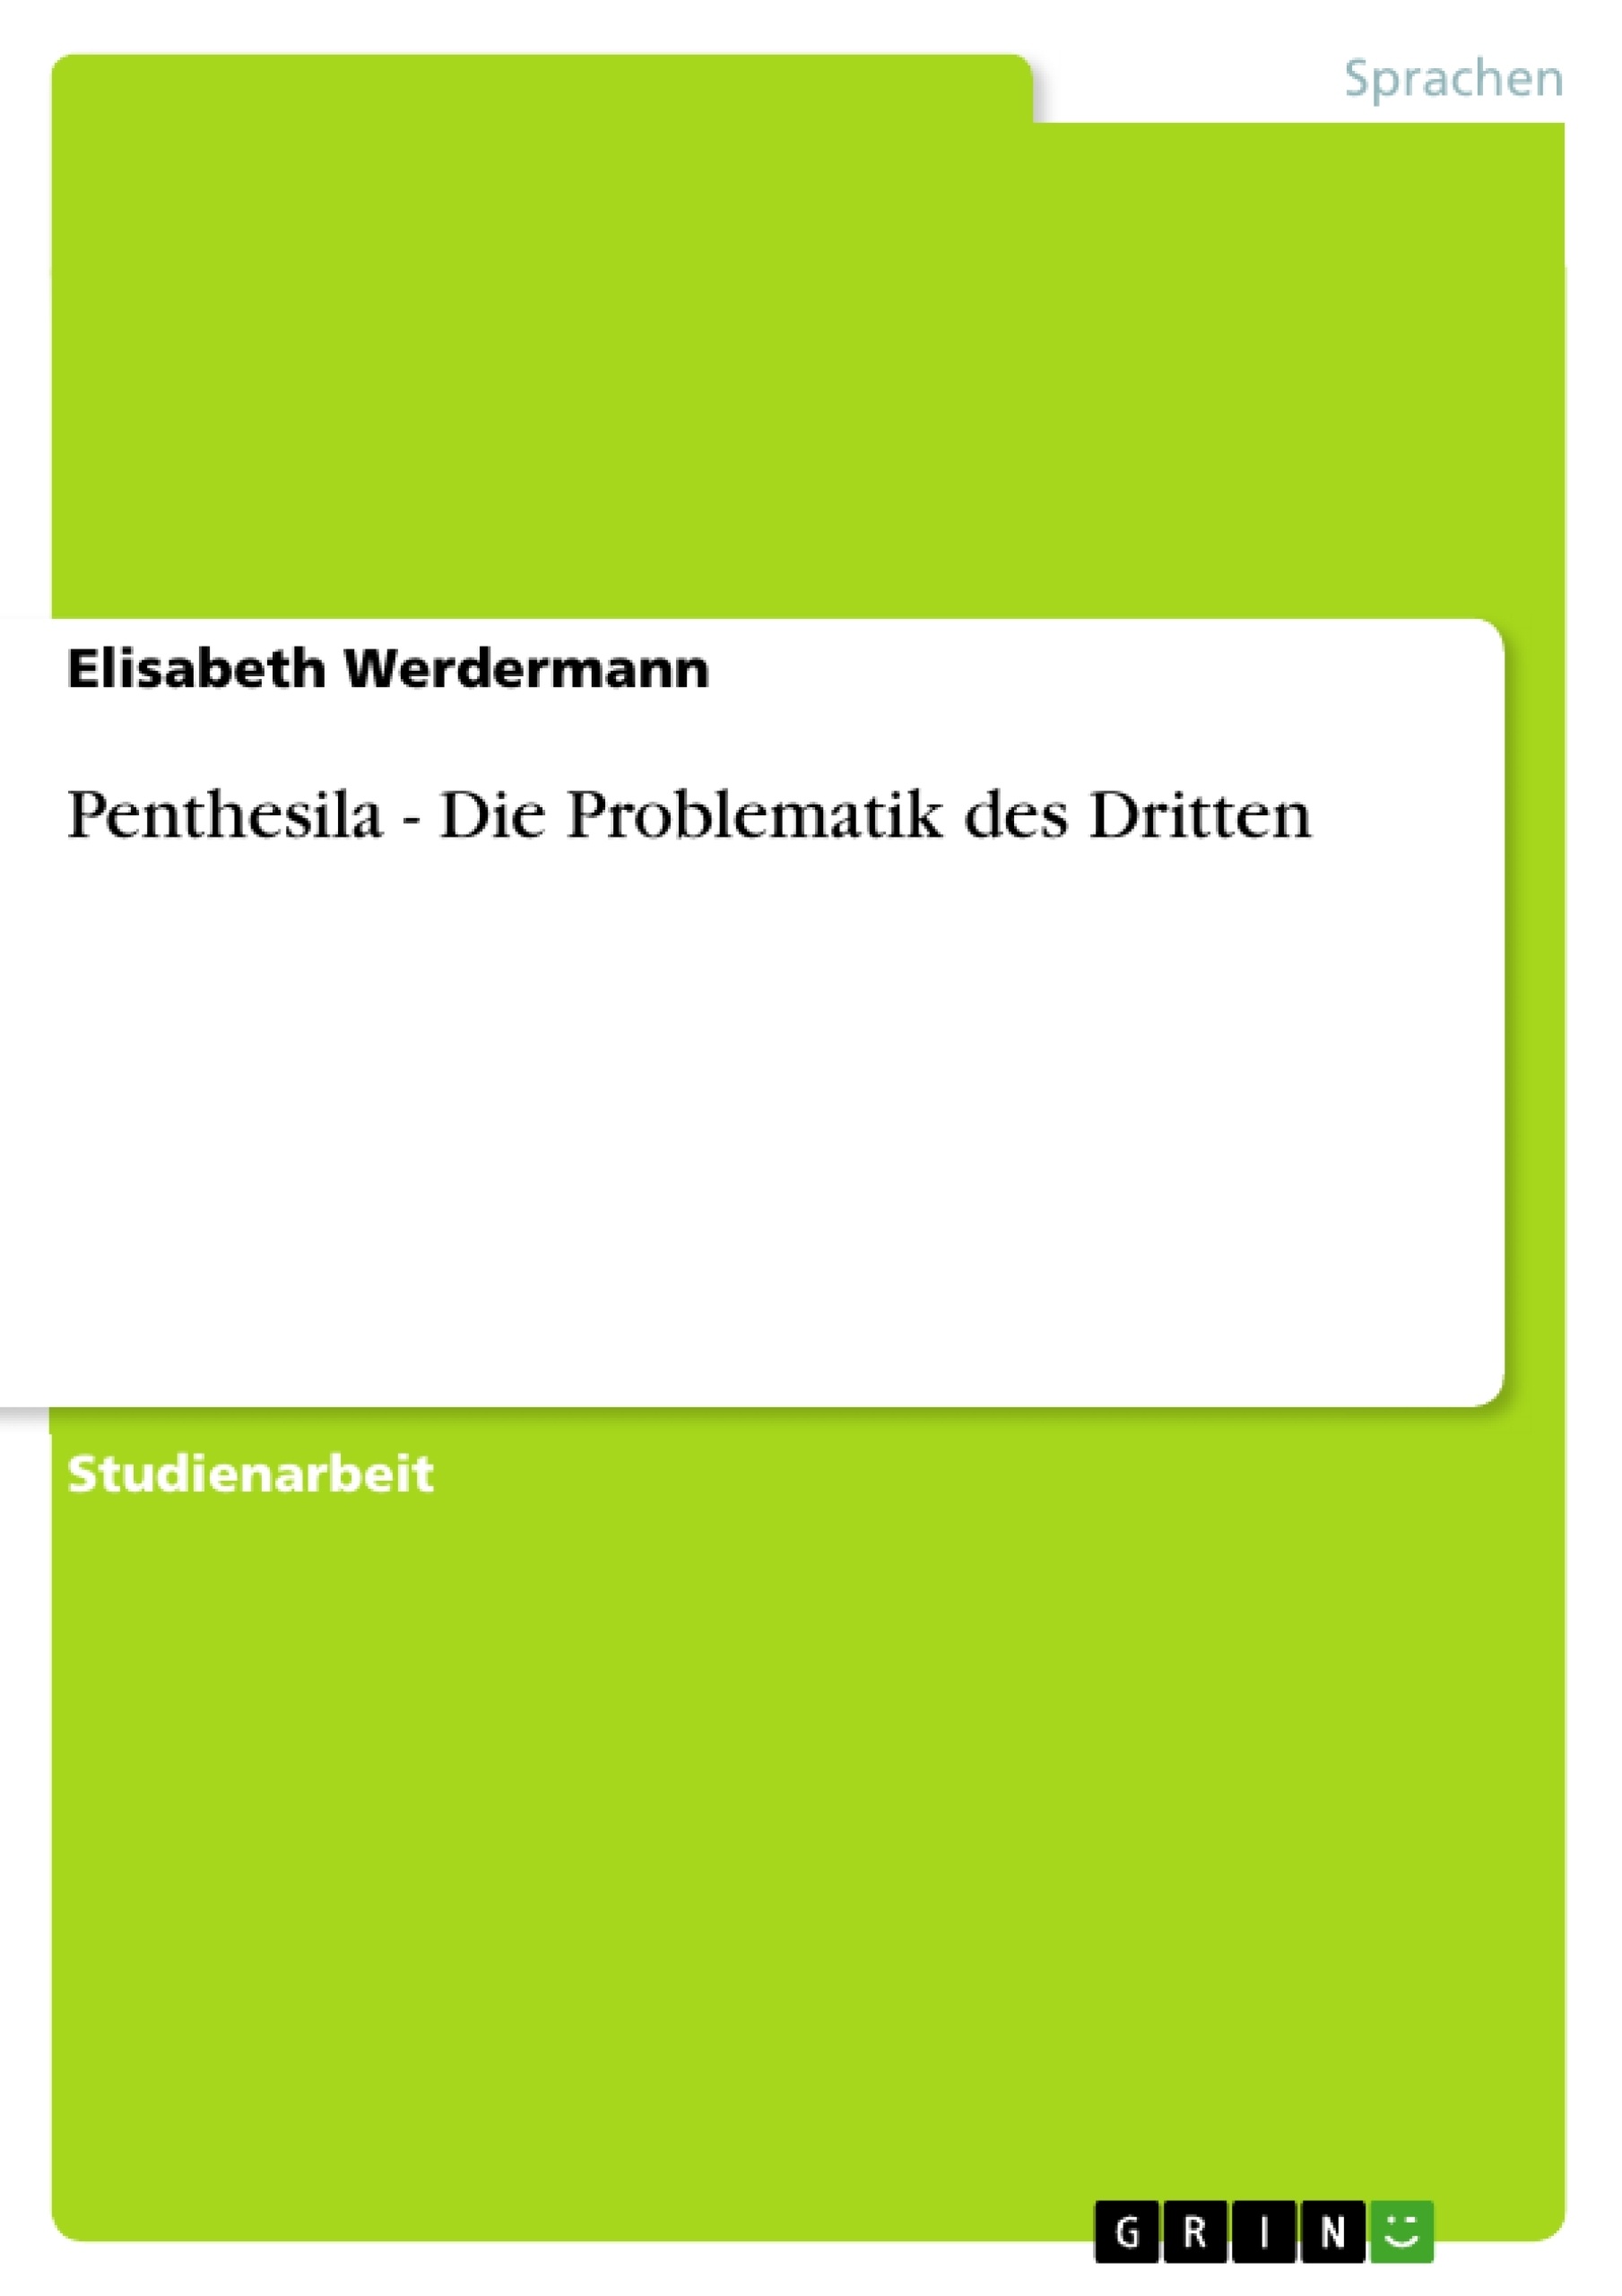 Title: Penthesila - Die Problematik des Dritten